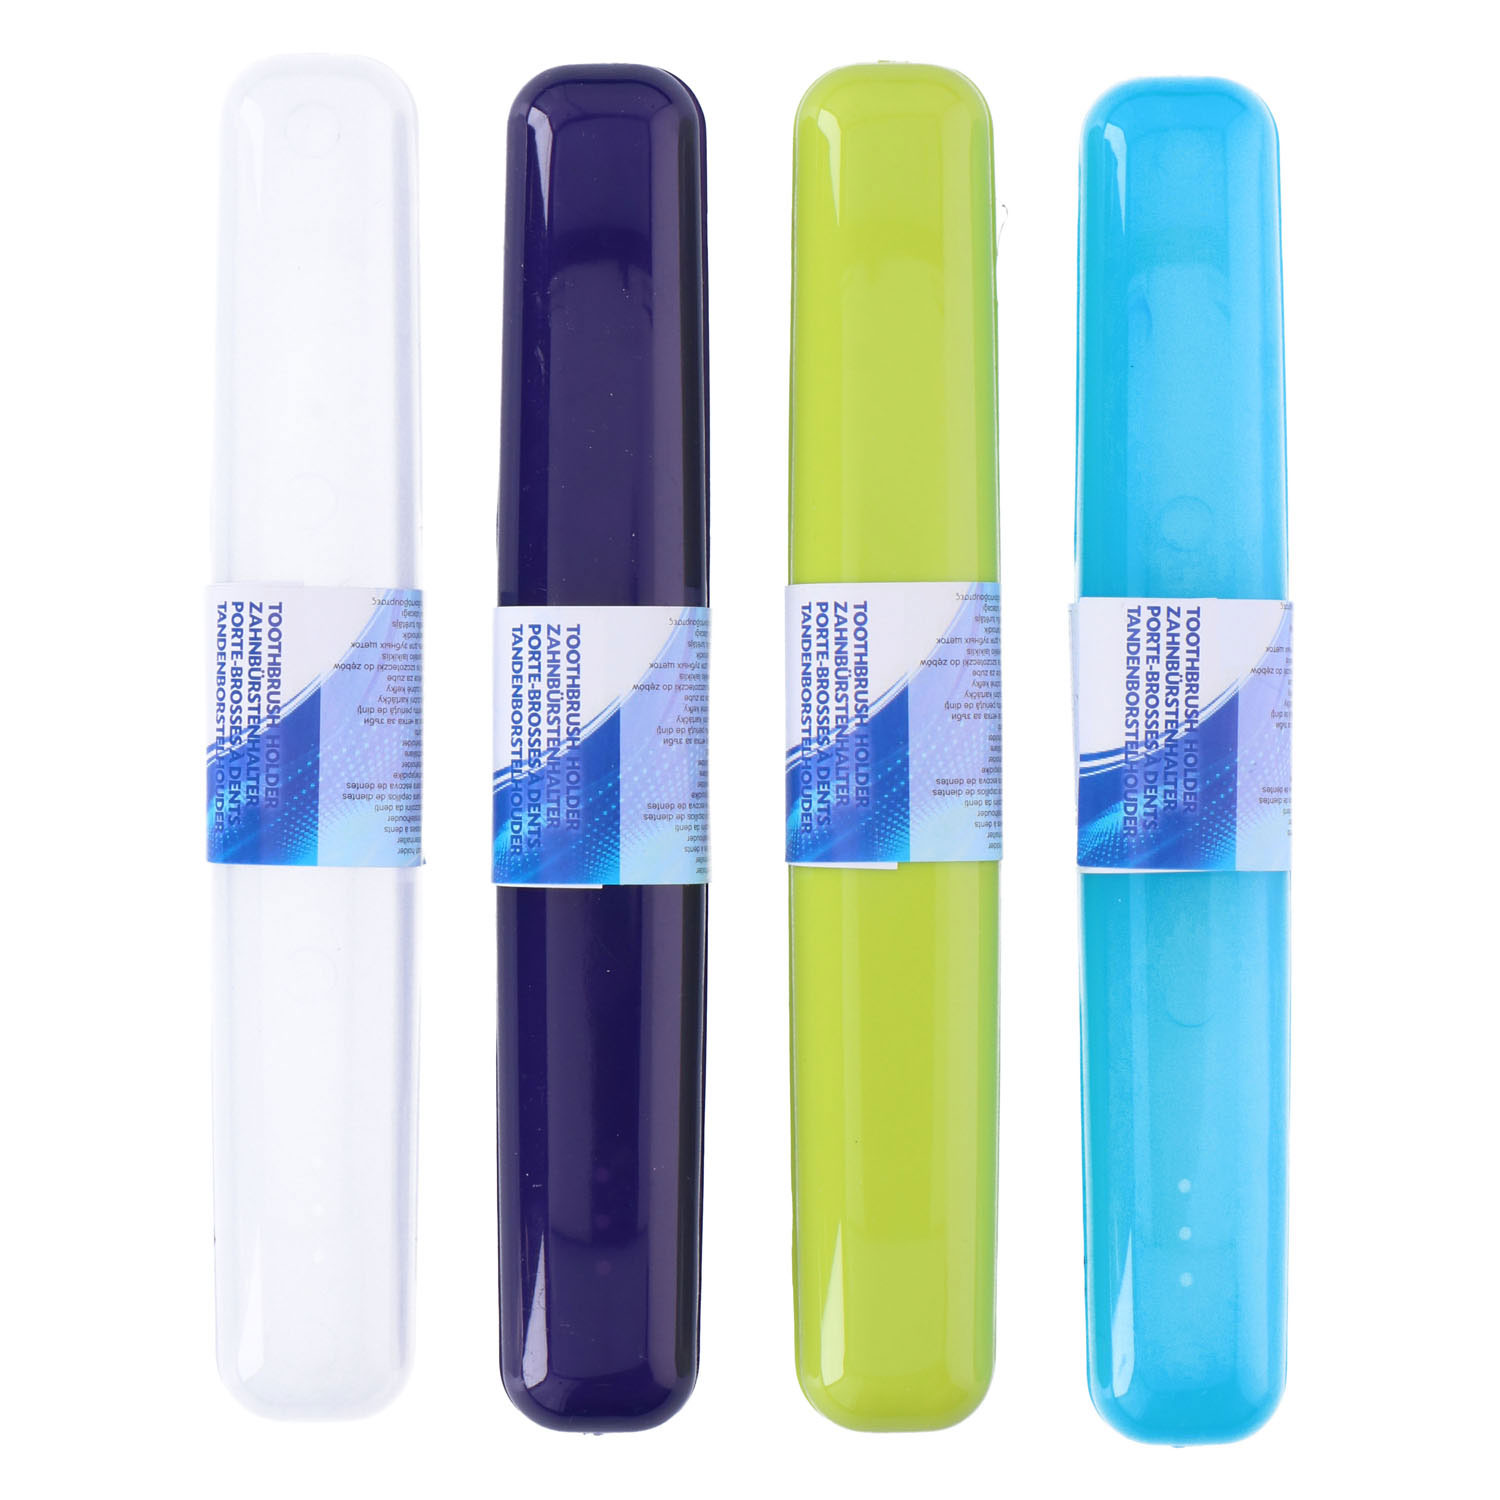 Zahnbürstenhalter aus Kunststoff